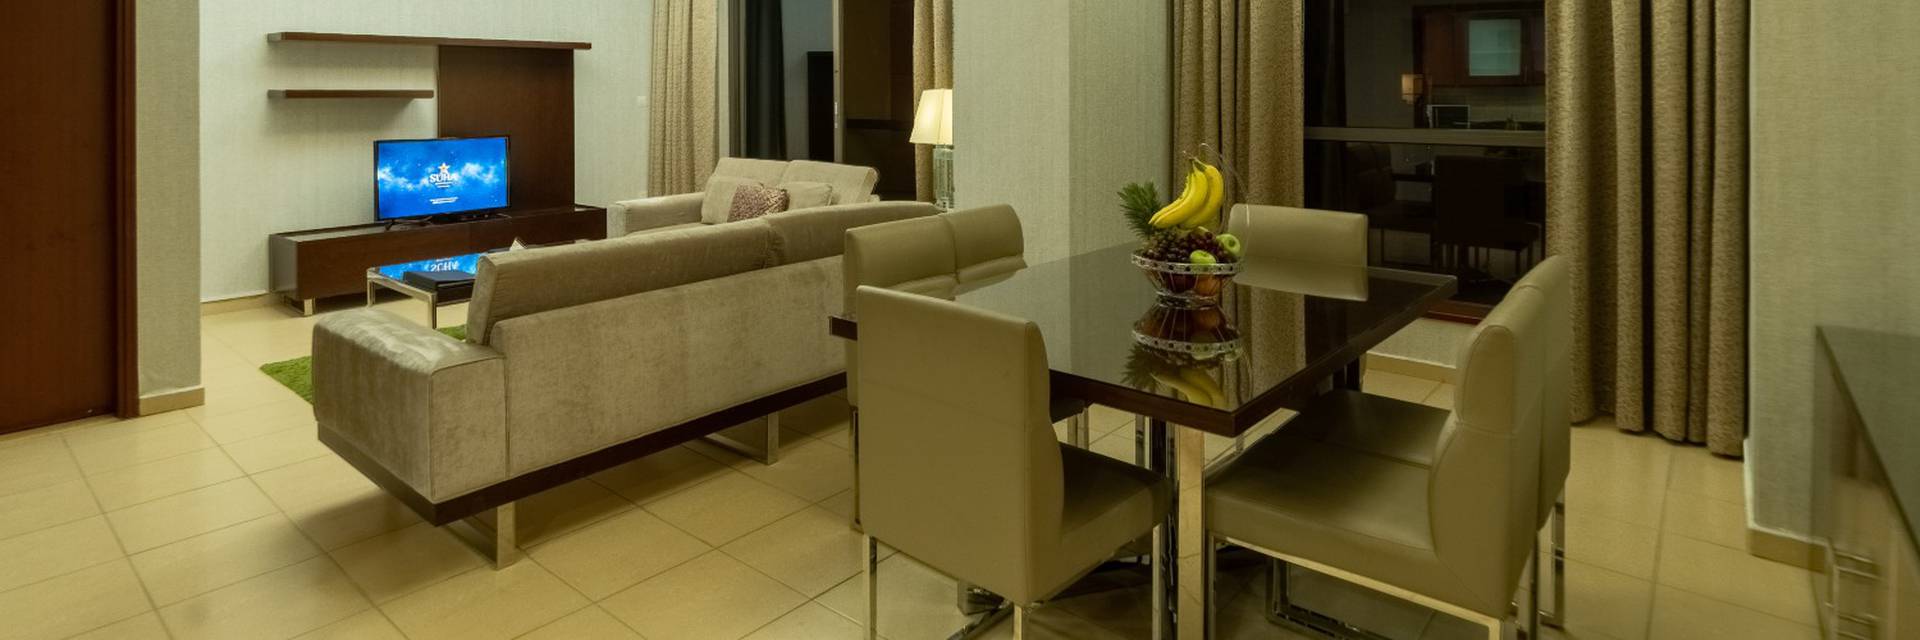 الصور شقق سها الفندقية دبي